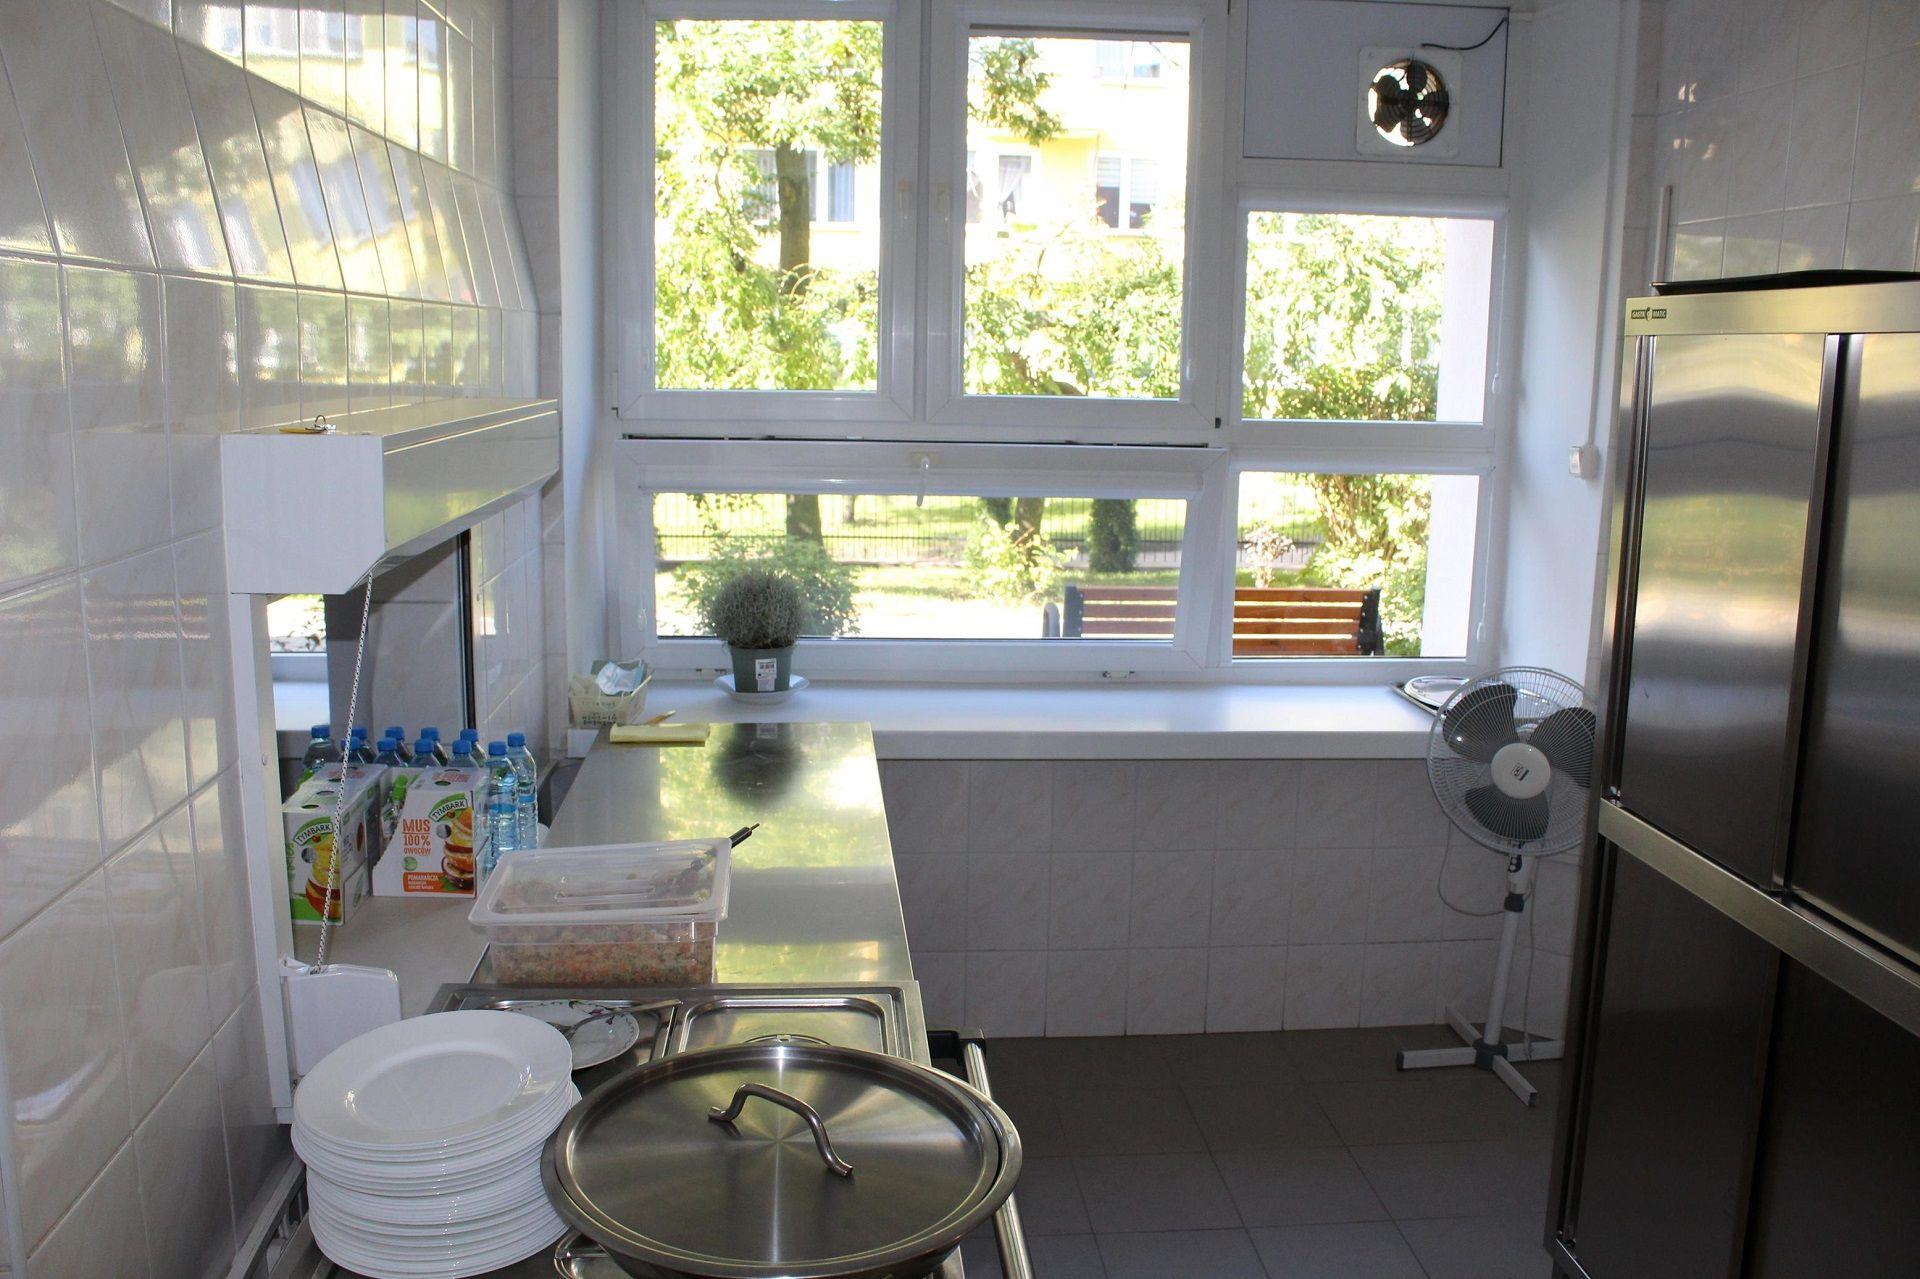 Odnowiona kuchnia w Szkole Podstawowej nr 3 w Lipnie - kliknięcie spowoduje powiększenie zdjęcia